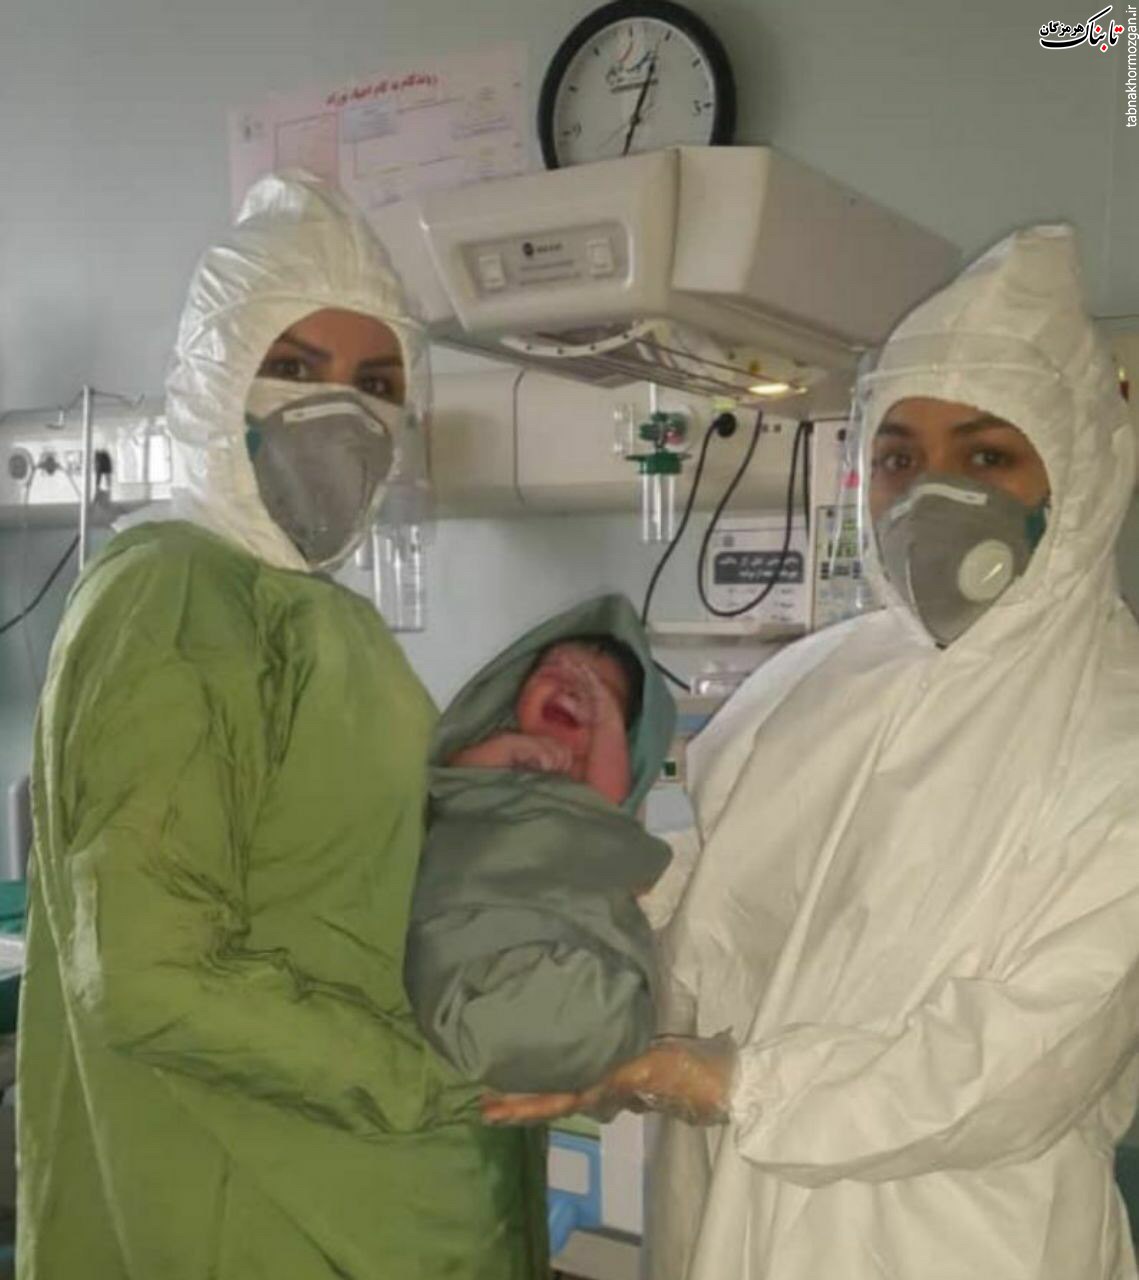 سومین زایمان طبیعی مادر مبتلا به کرونا در بیمارستان فرقانی قم انجام شد